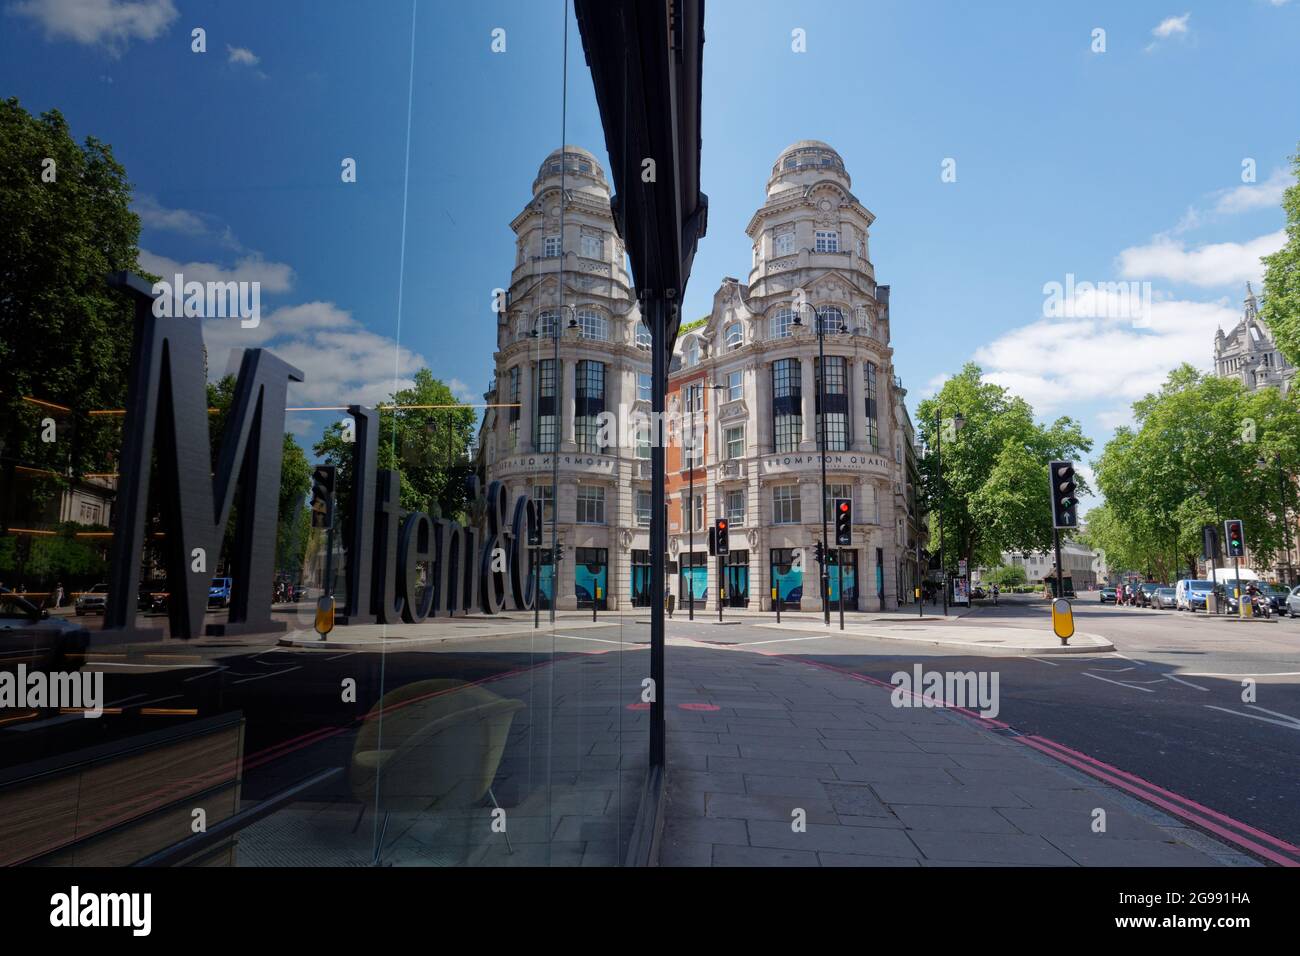 Londres, Grand Londres, Angleterre, juin 12 2021 : reflet de l'image miroir de Brompton Quarter Empire House, Brompton Road à South Kensington. Banque D'Images